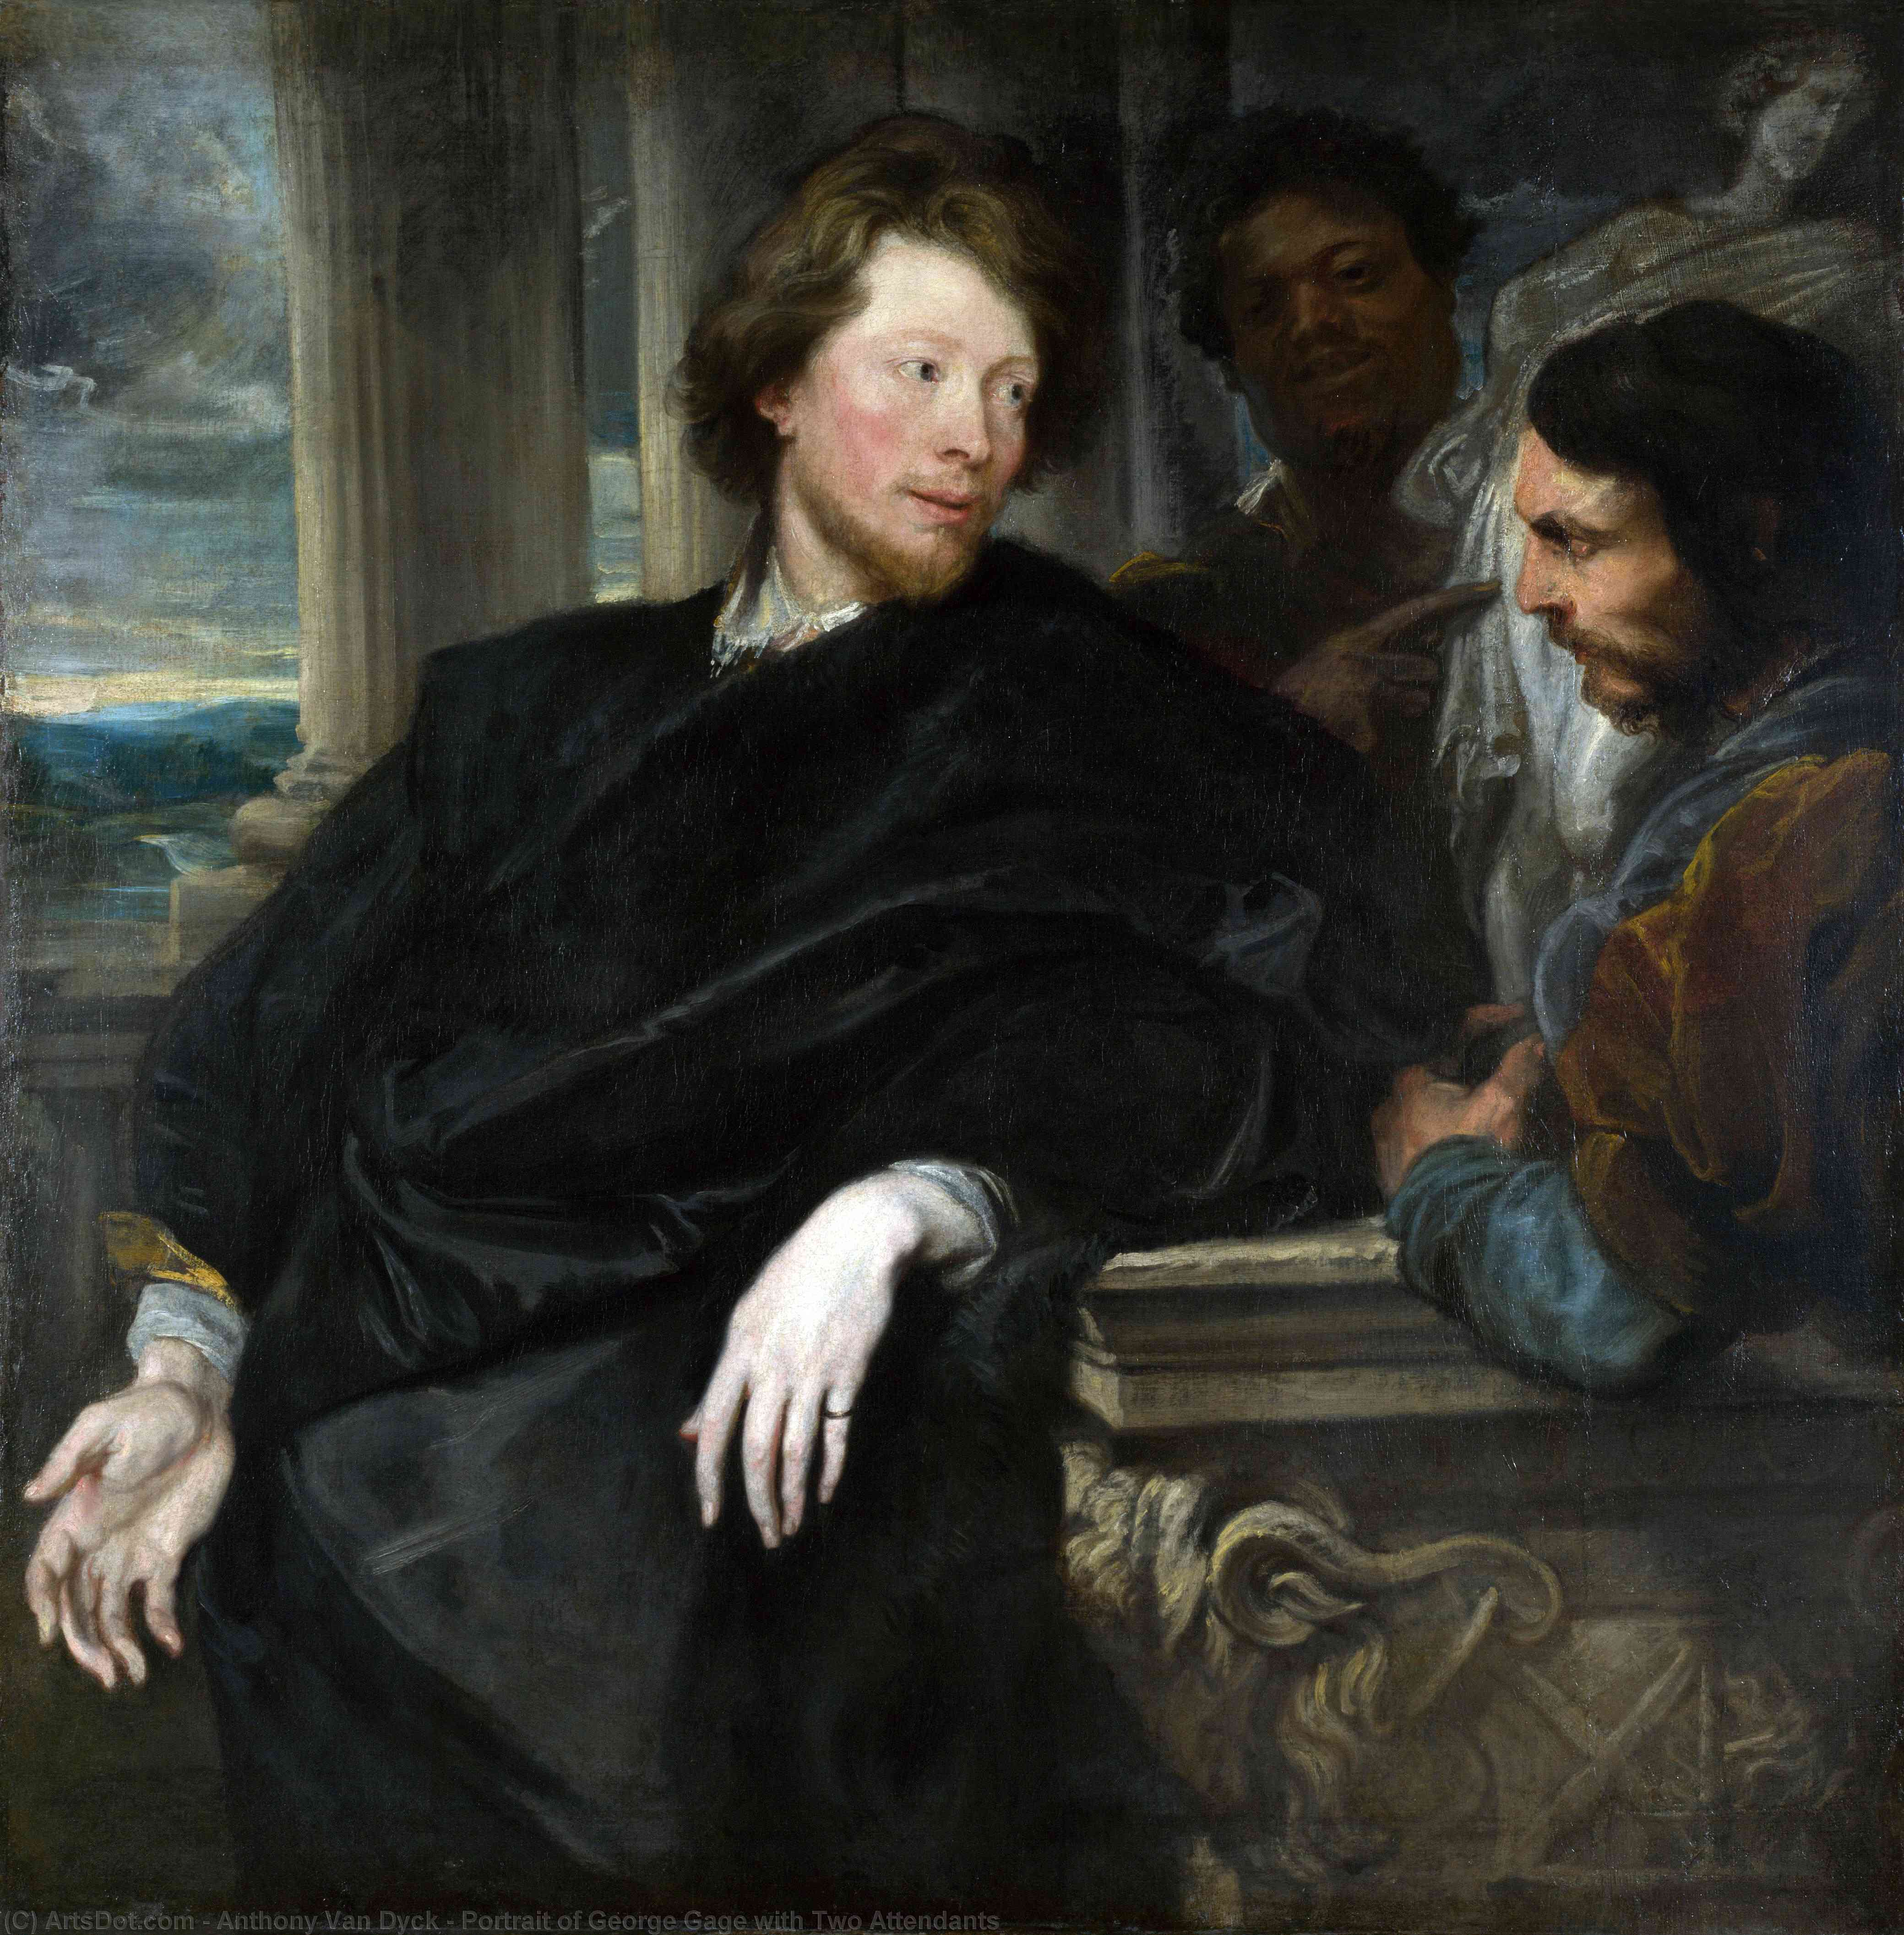 WikiOO.org - אנציקלופדיה לאמנויות יפות - ציור, יצירות אמנות Anthony Van Dyck - Portrait of George Gage with Two Attendants